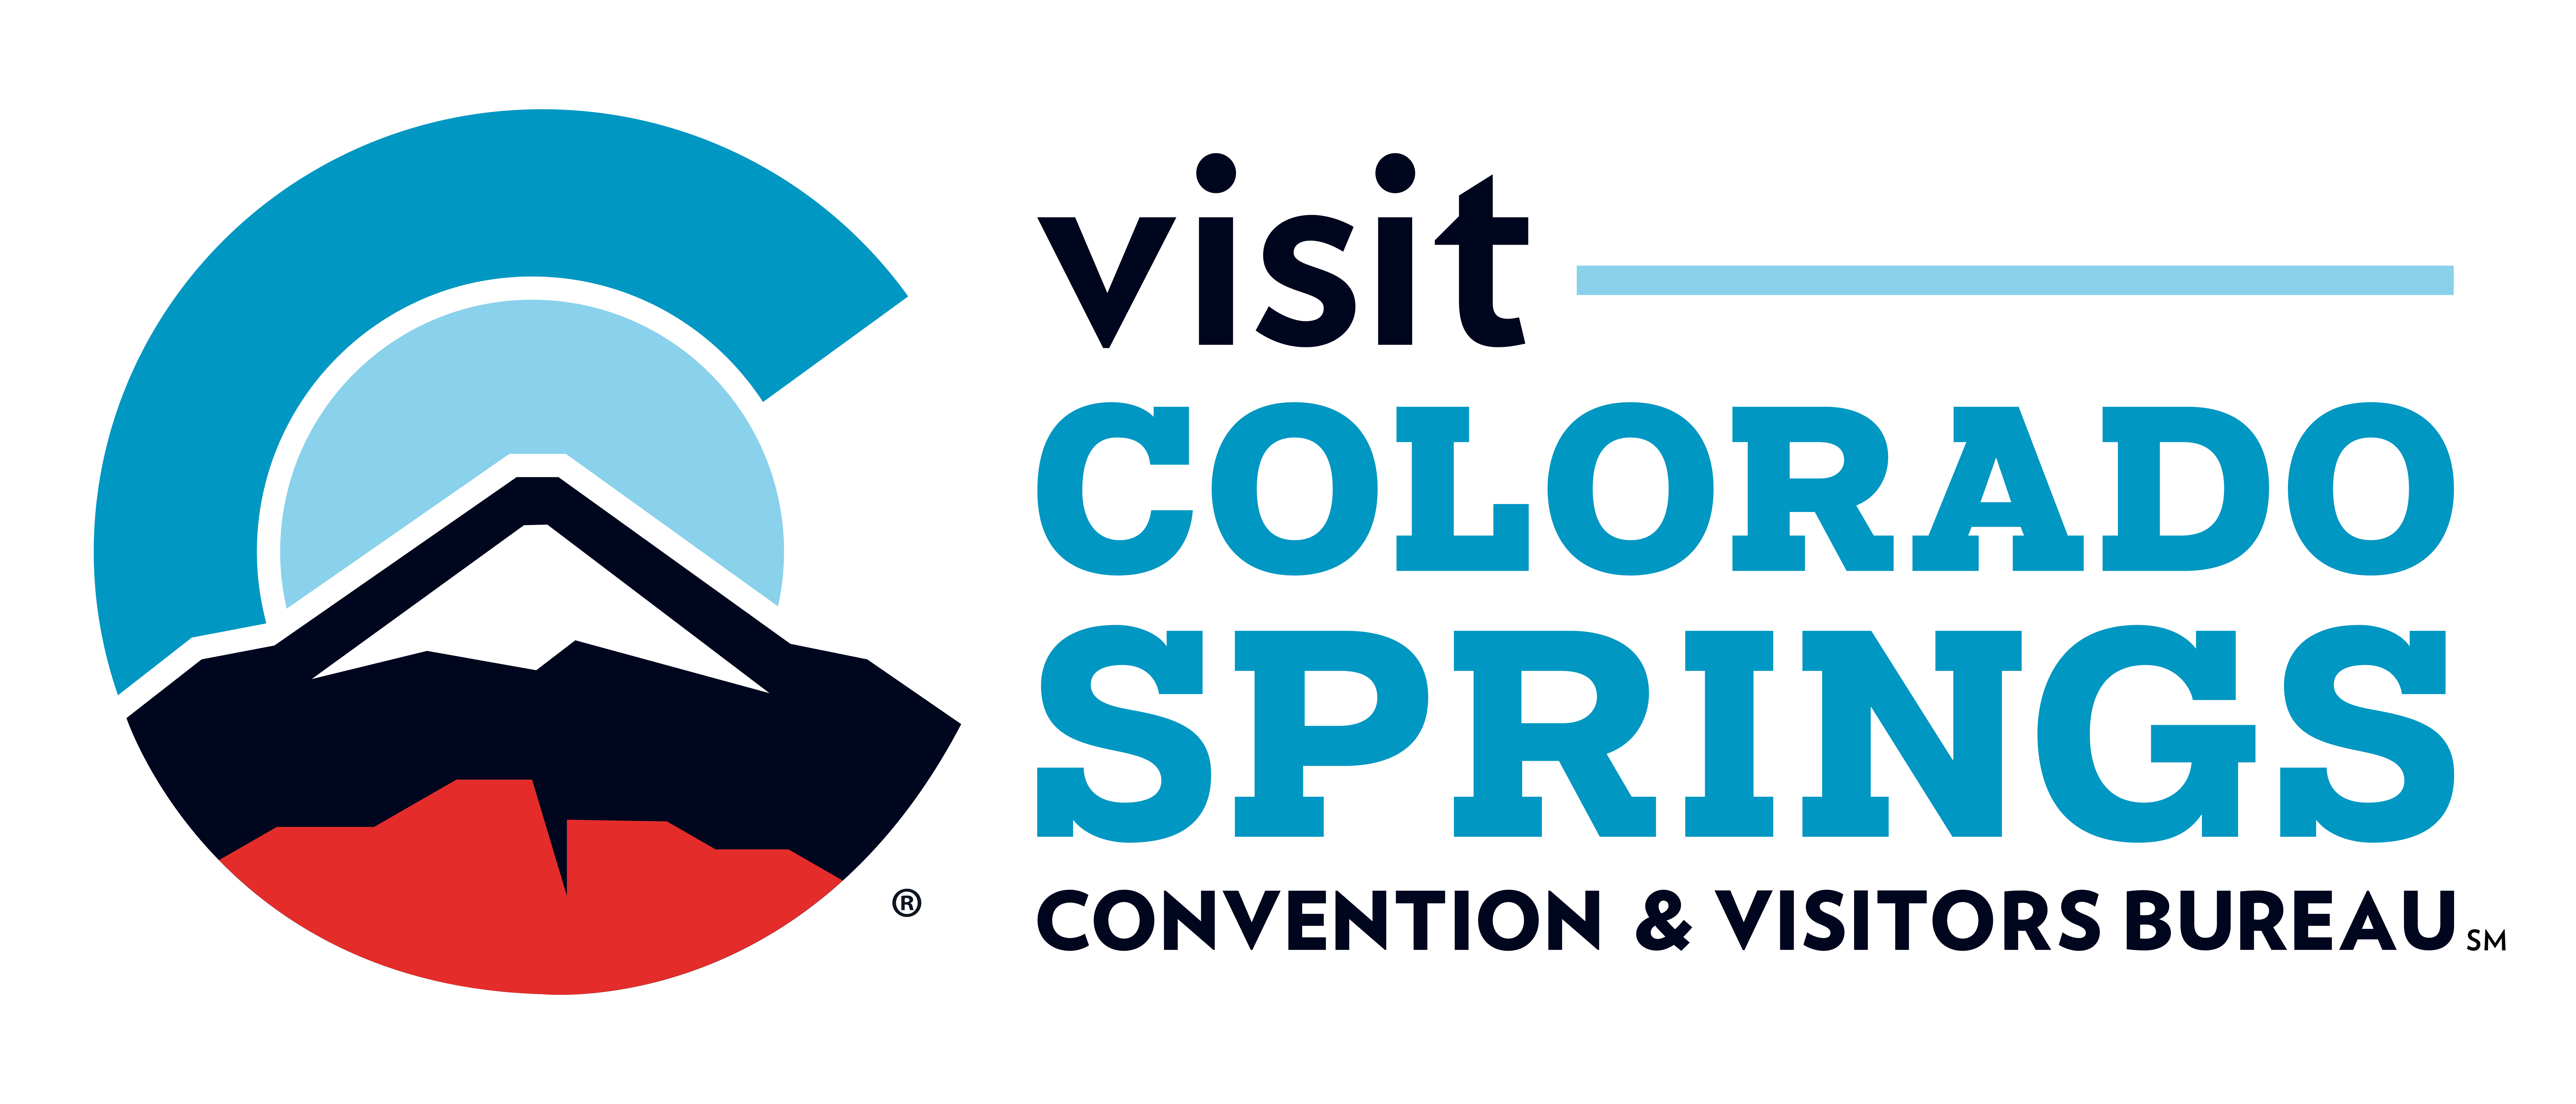 Colorado Springs Convention & Visitors Bureau - Horizontal - Color